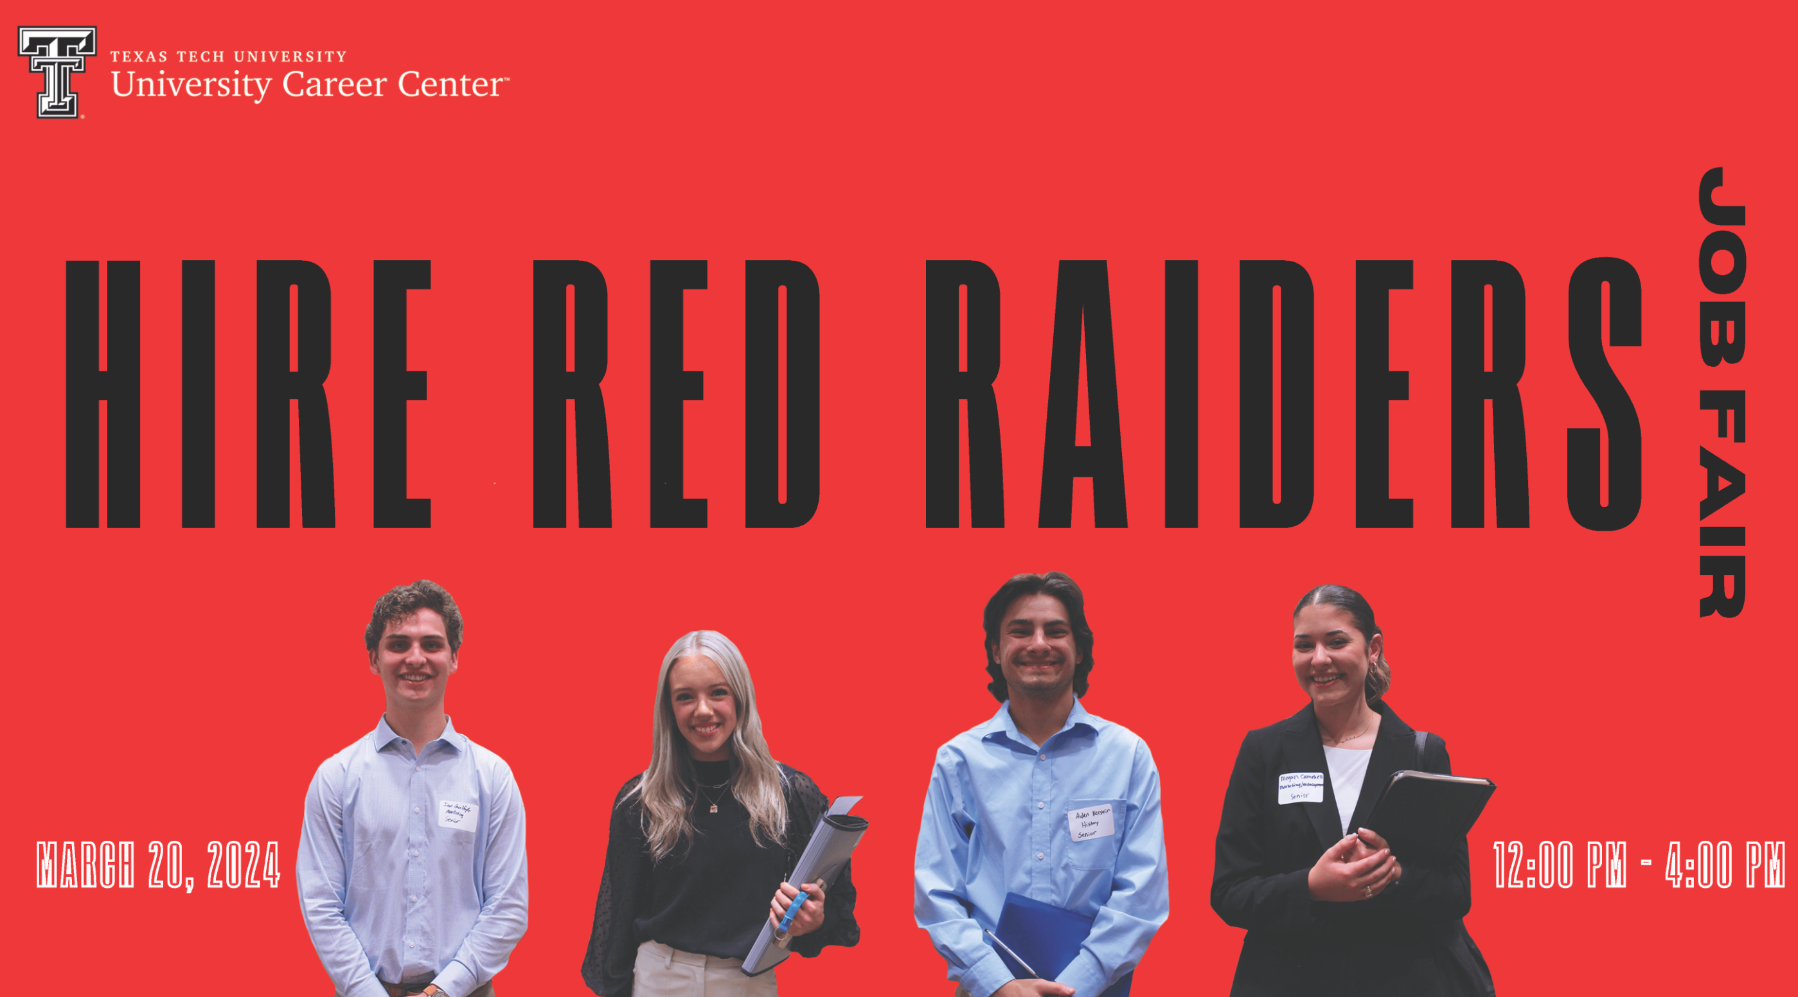 Hire Red Raiders Job Fair March 20, 2024